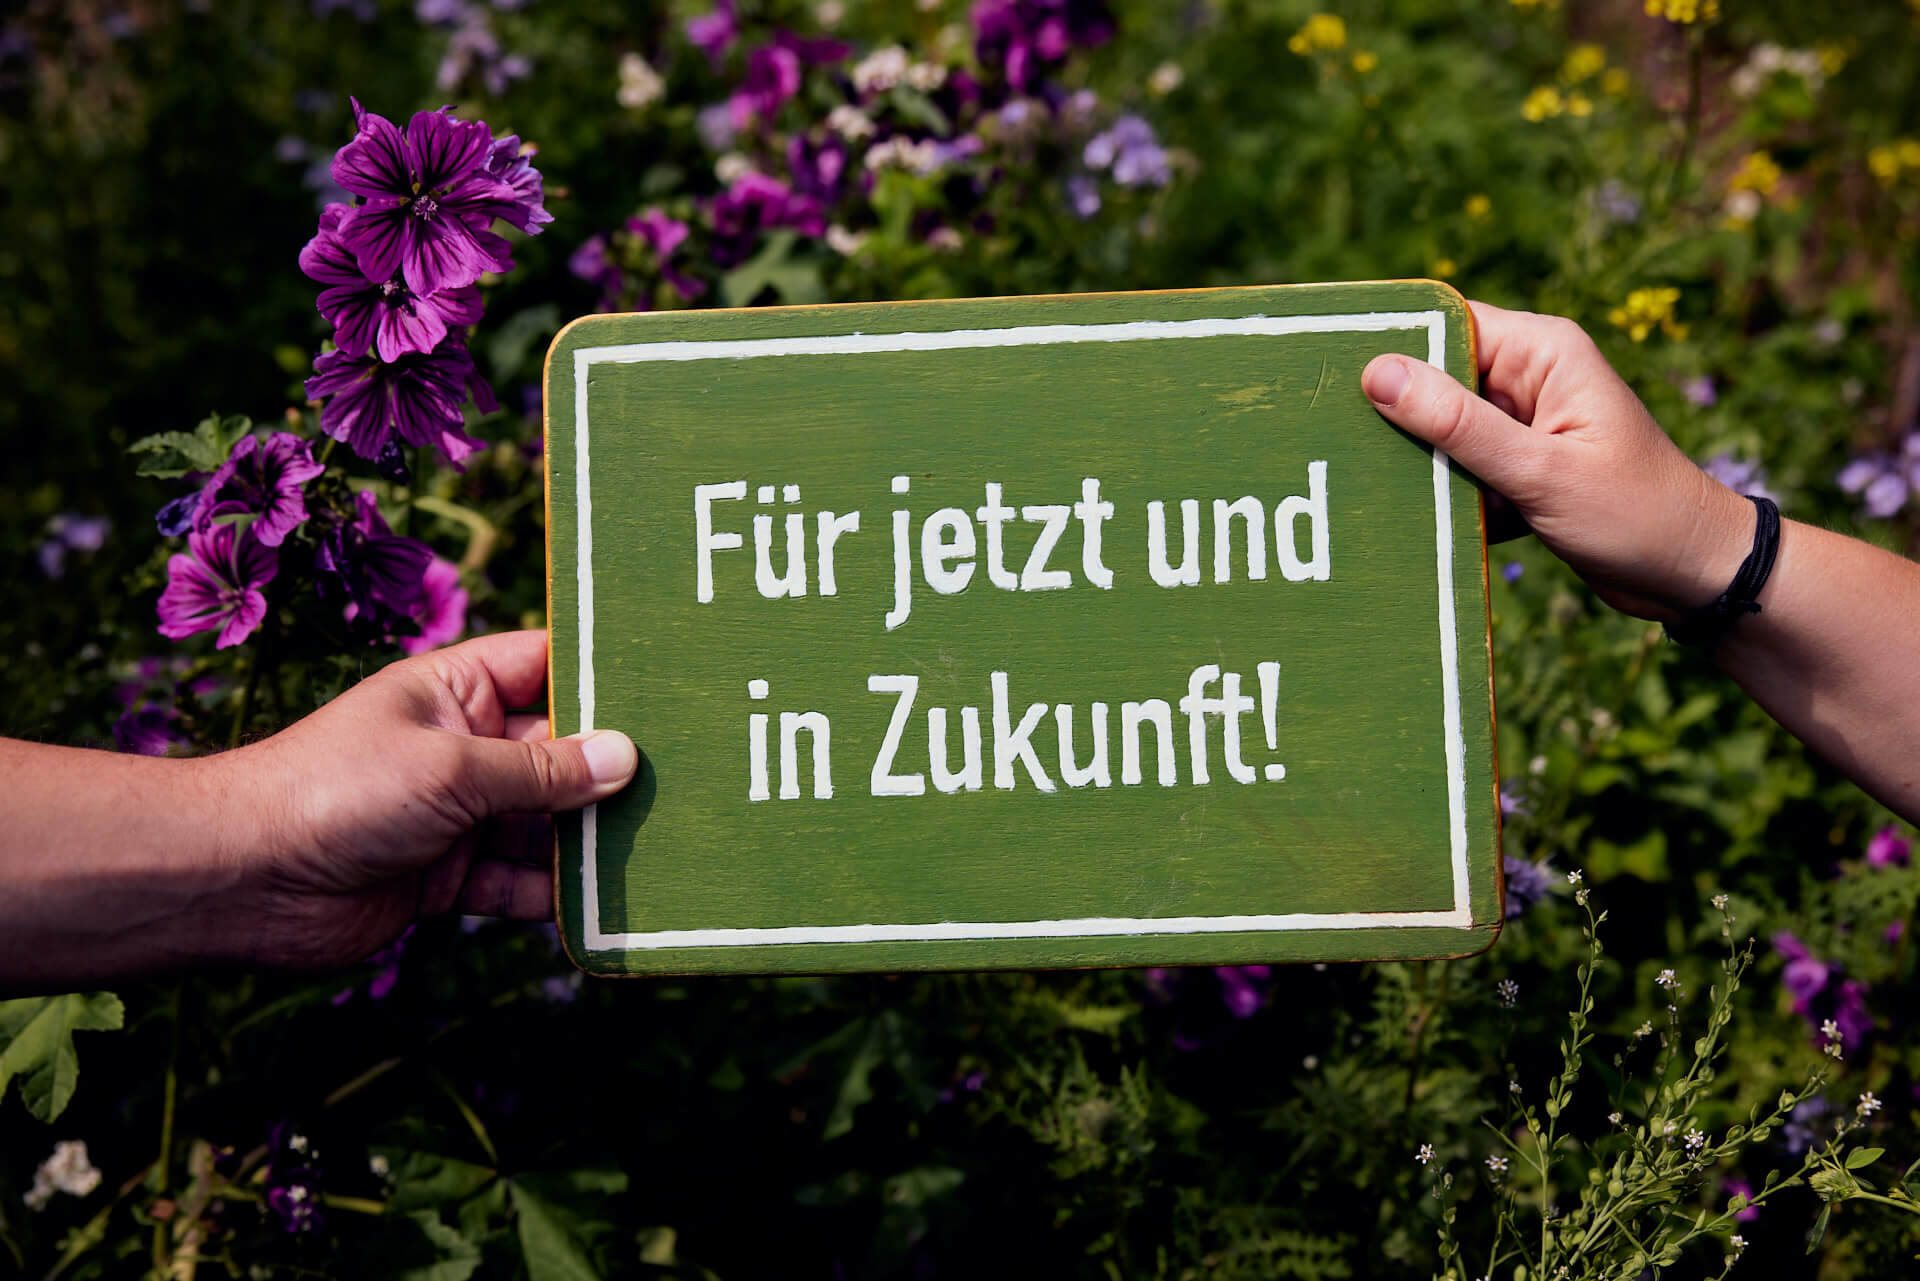 Exhibition sign „Für jetzt und in Zukunft!“ – “For now and in the future!” (Photo: Niko Martin)